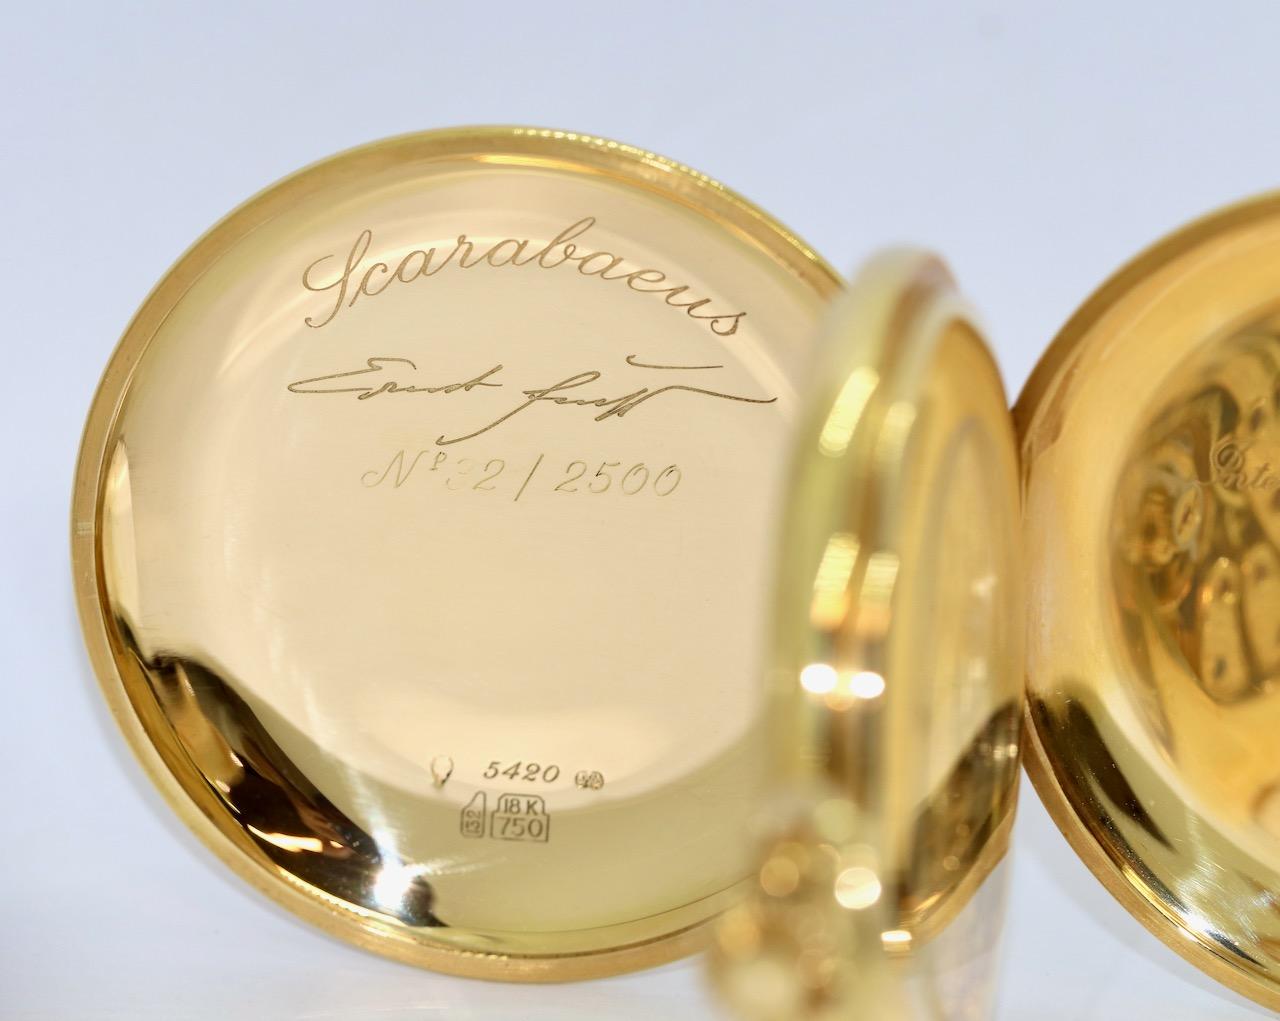 18 Karat Gold limited IWC Pocket Watch, Scarabaeus by Ernst Fuchs, Ref. 5420 For Sale 4